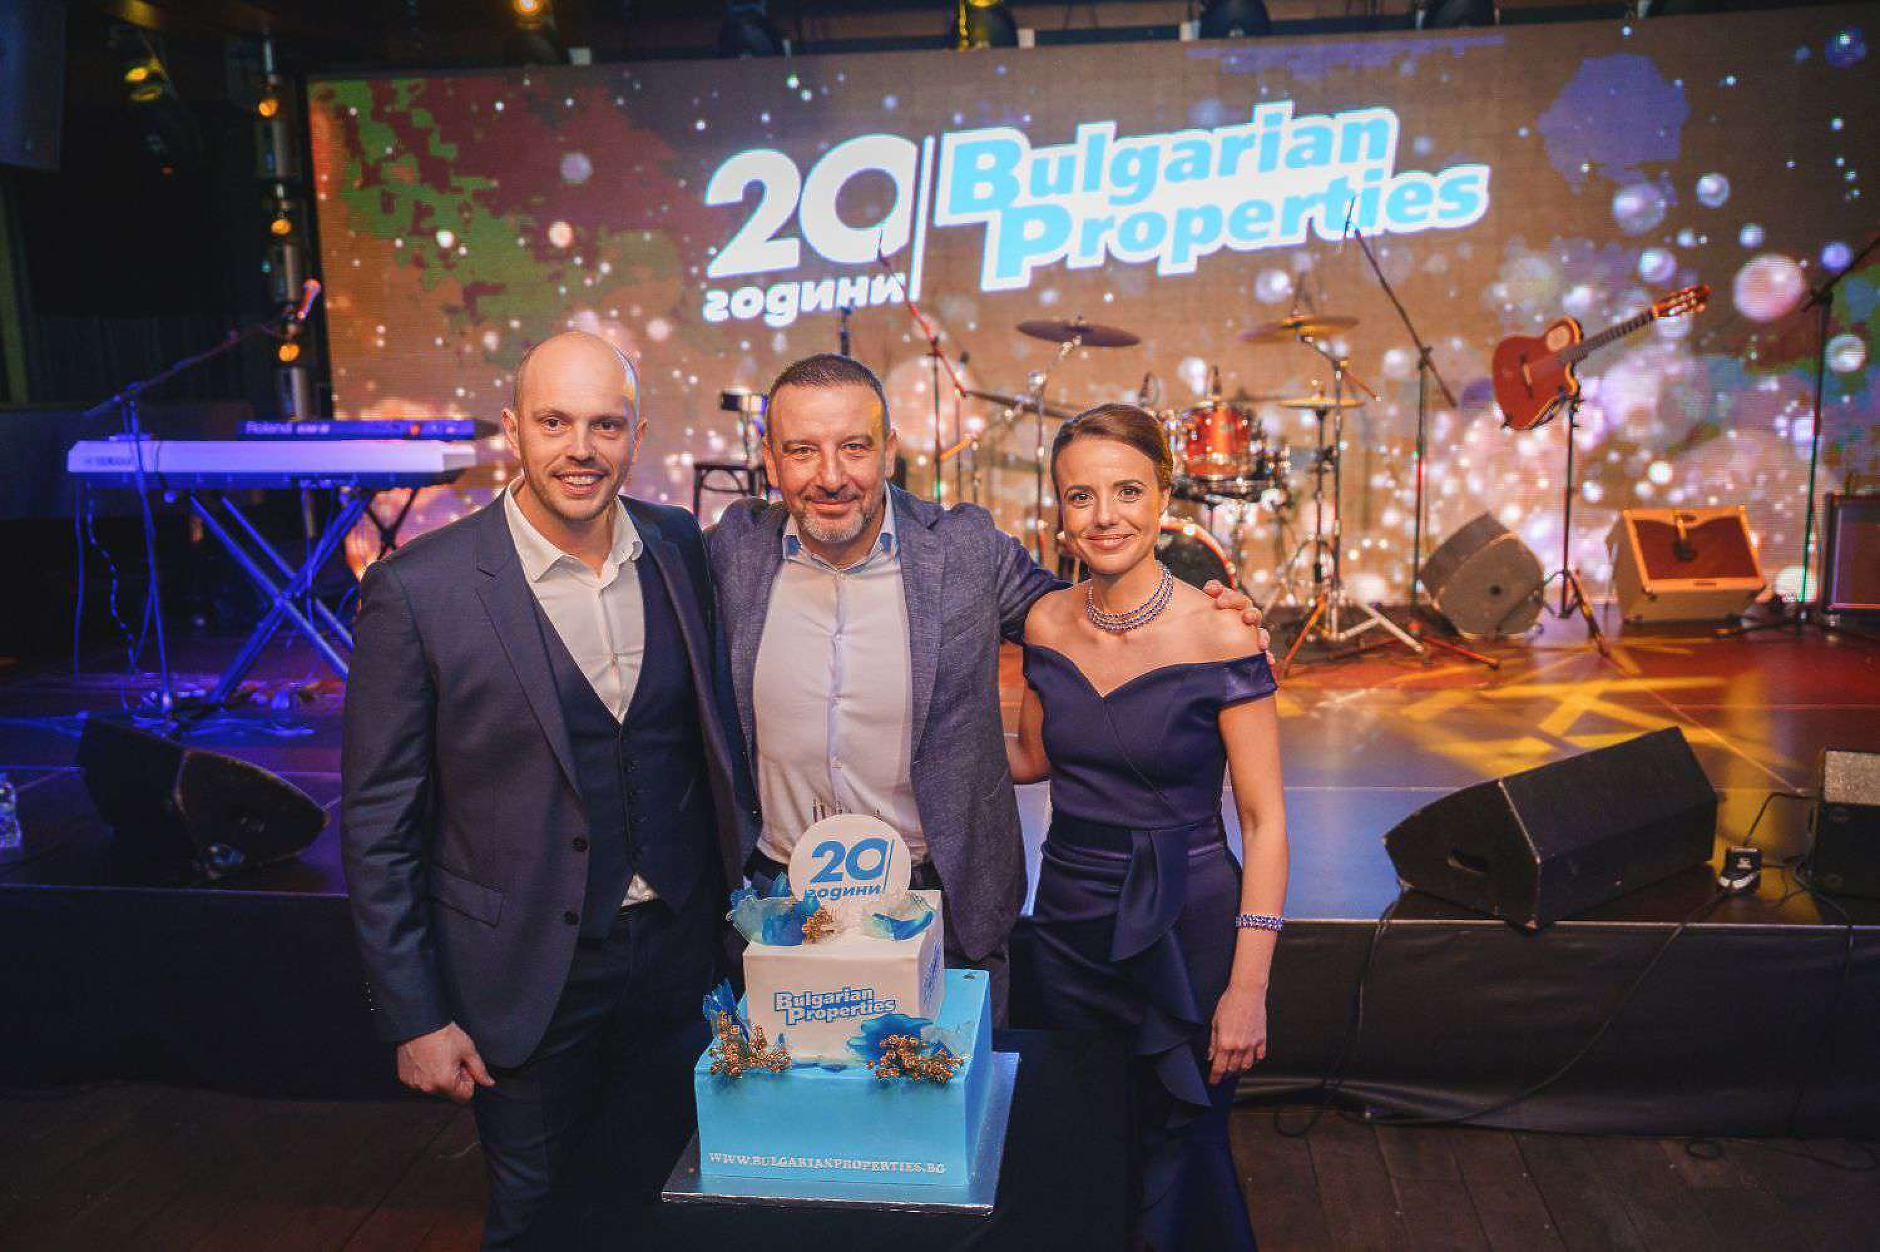 BULGARIAN PROPERTIES отпразнува своята 20-та годишнина